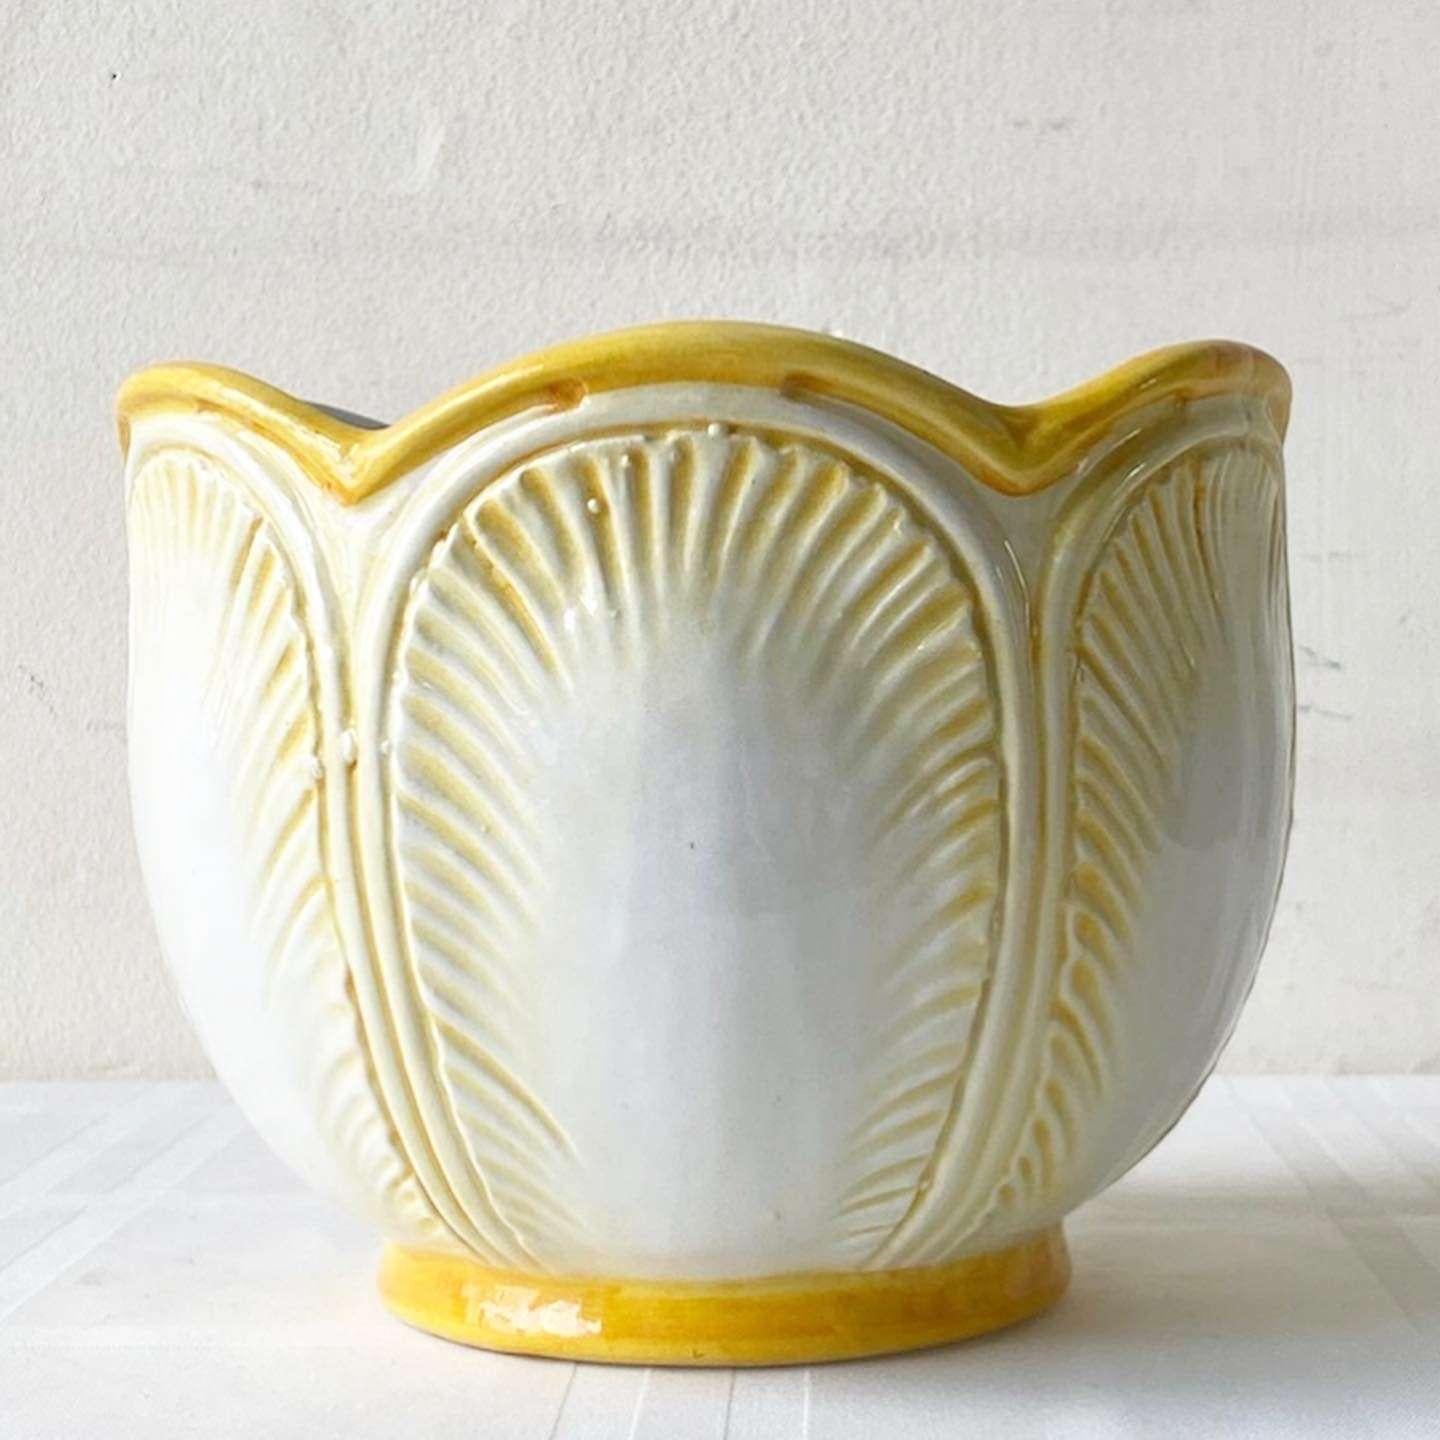 Unglaublicher italienischer Keramik-Pflanztopf im Vintage-Stil. Die Oberfläche ist gelb und weiß mit geätzten Blättern.
